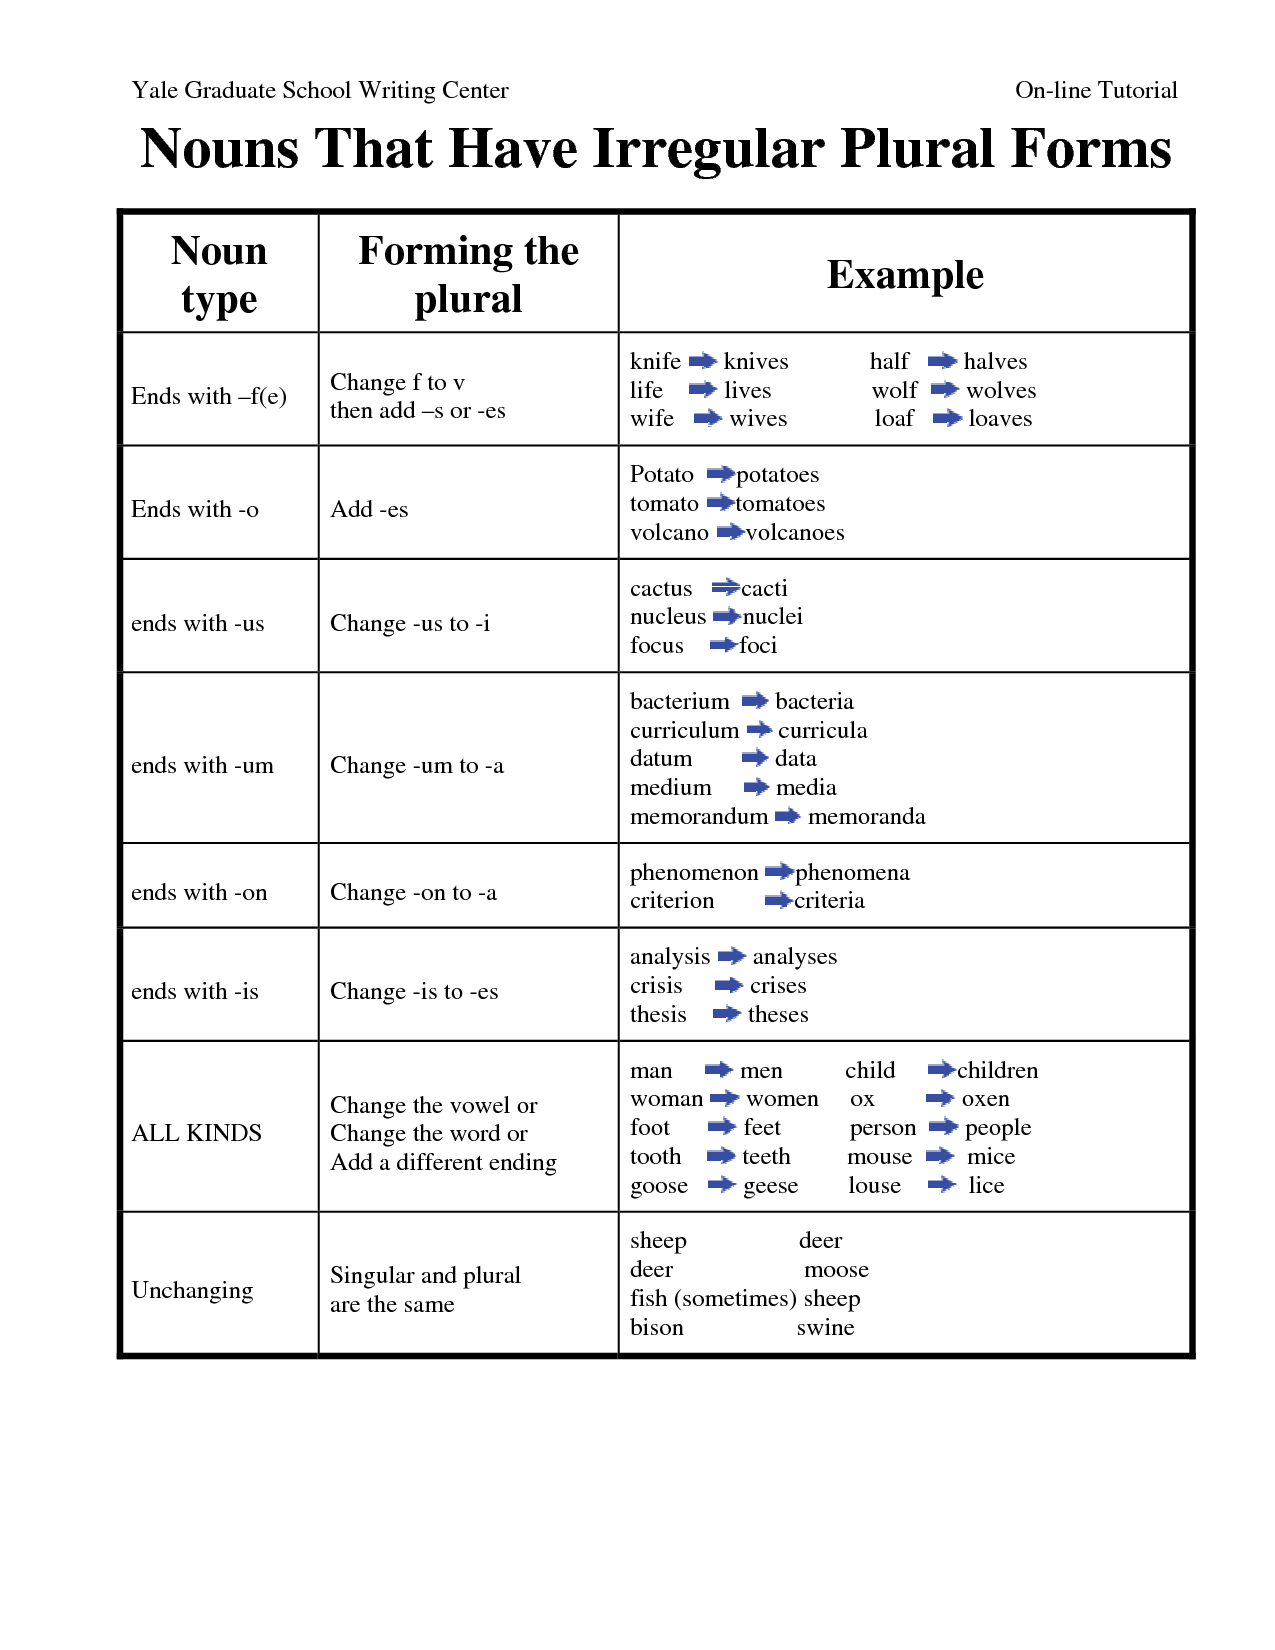 Form Irregular Plural Nouns Worksheets Image